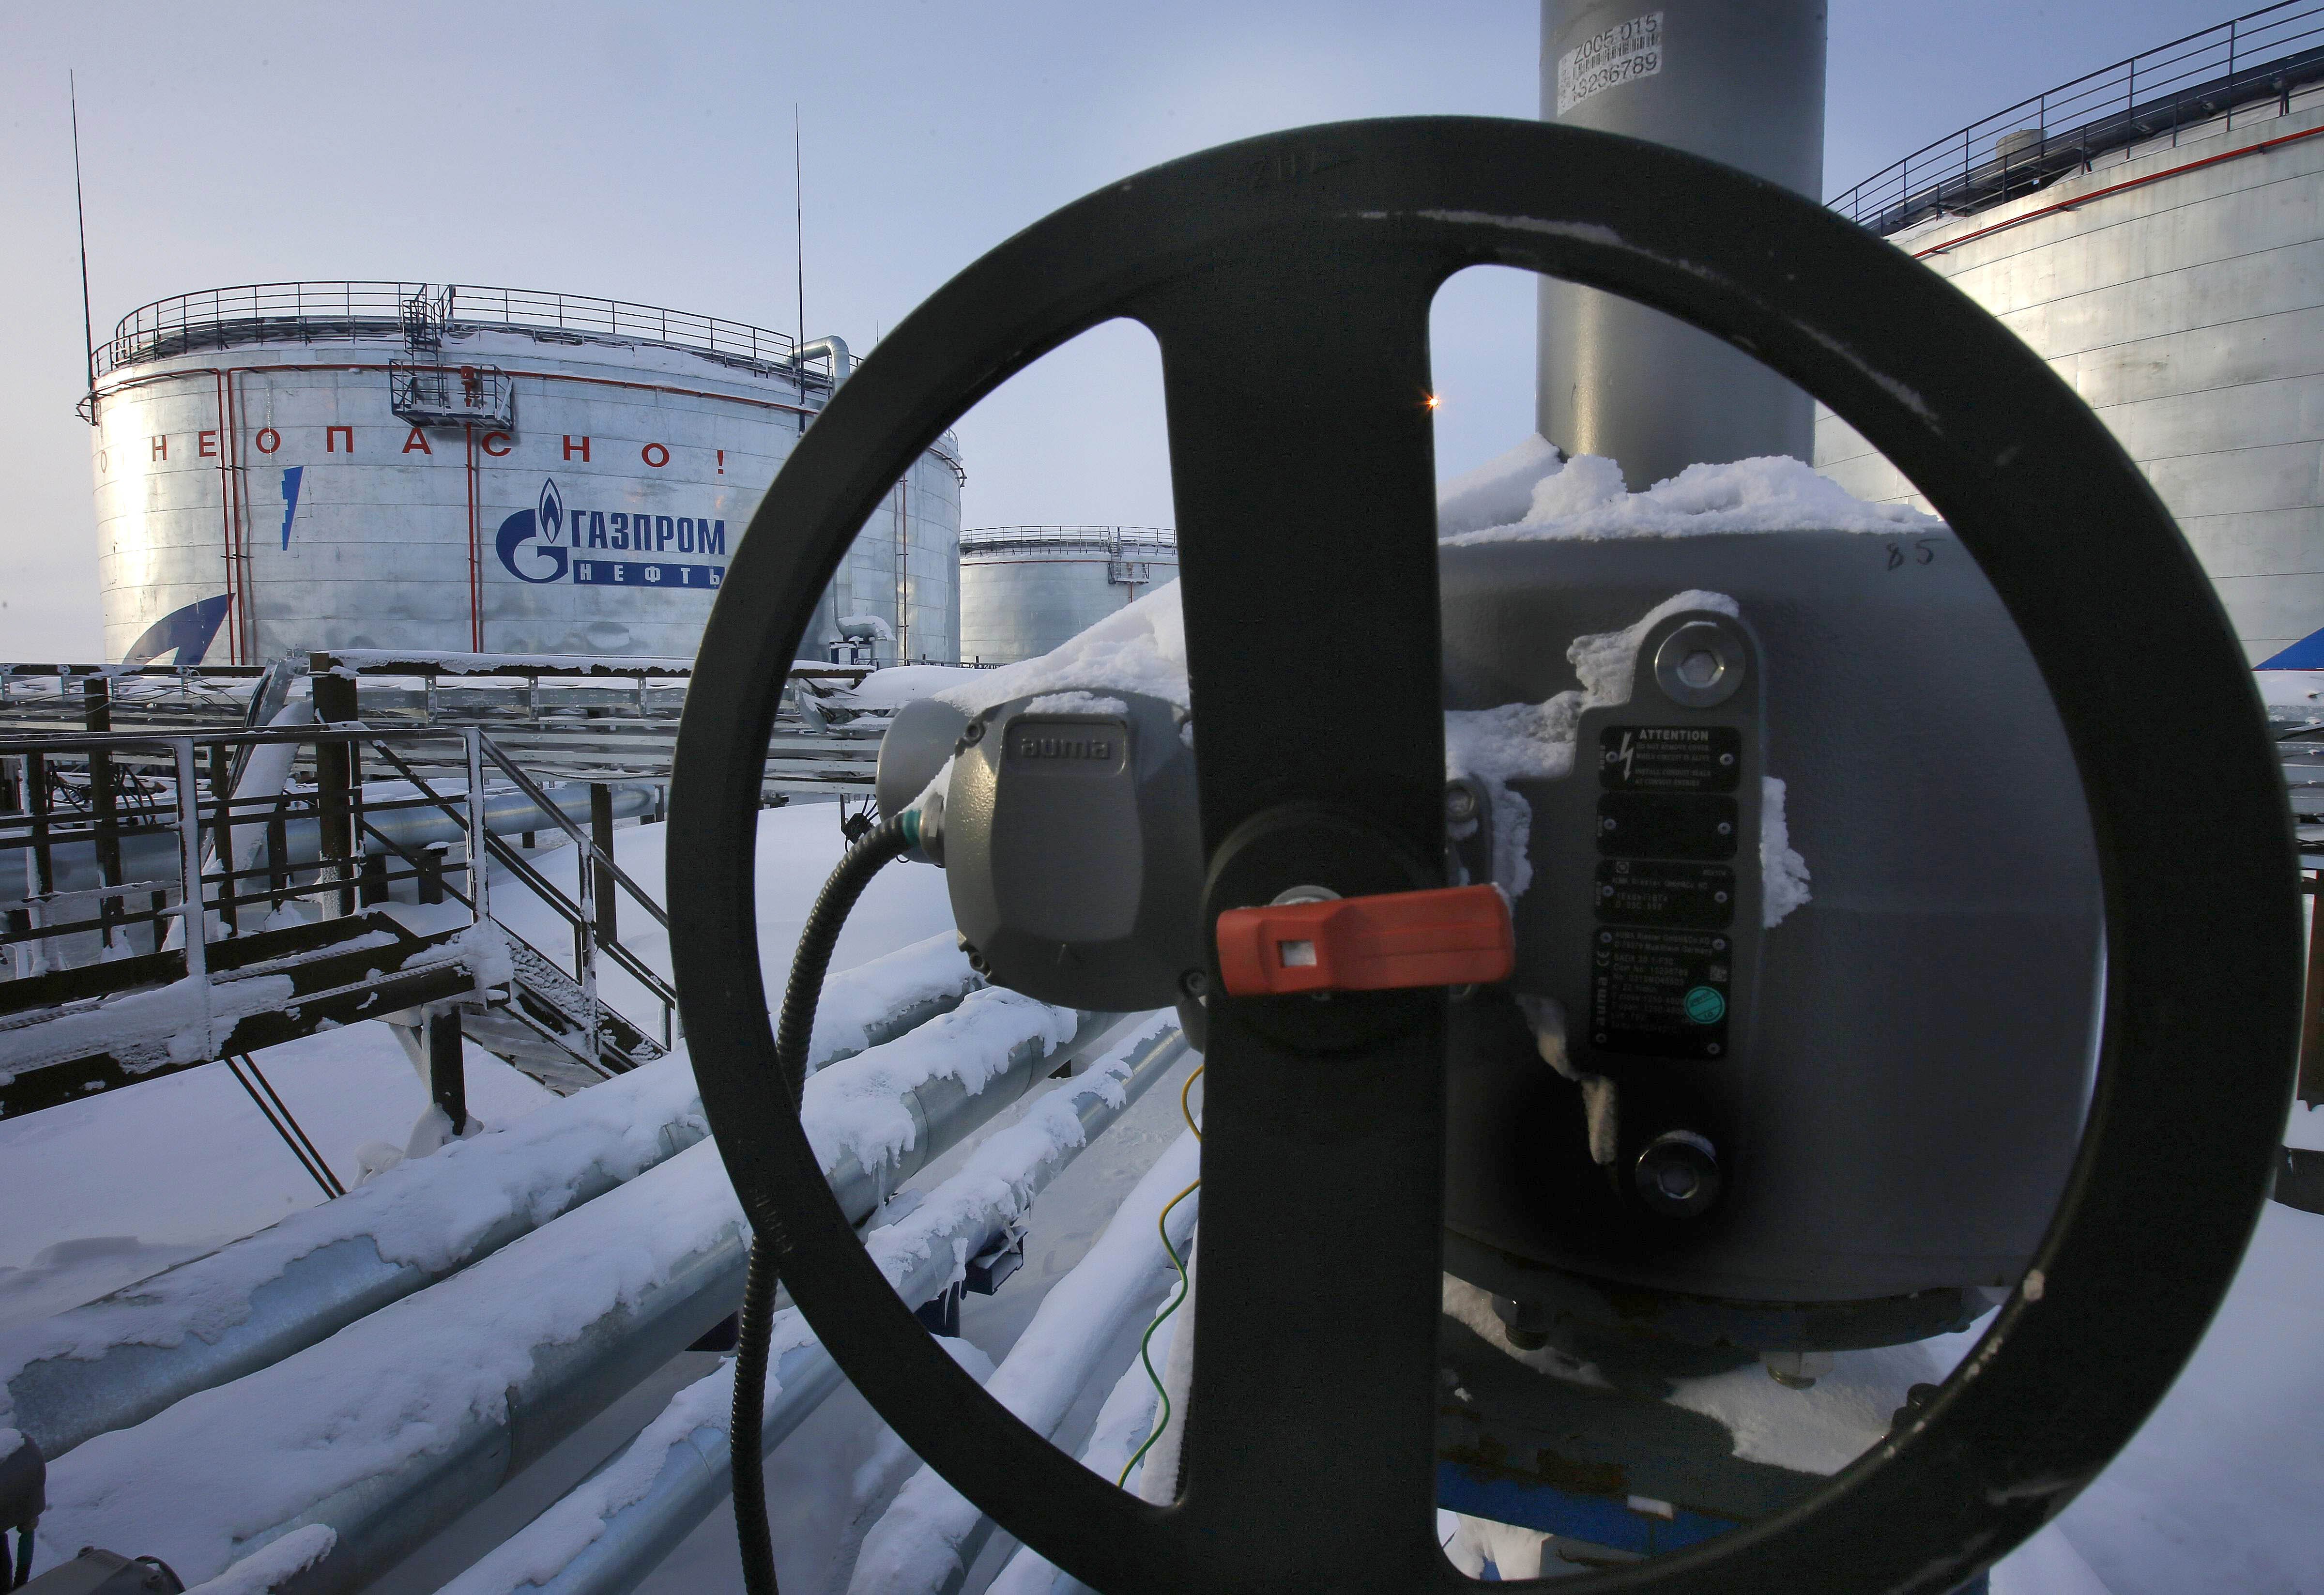 Embargo petrolio russo Embargo gas russo putin olanda finlandia